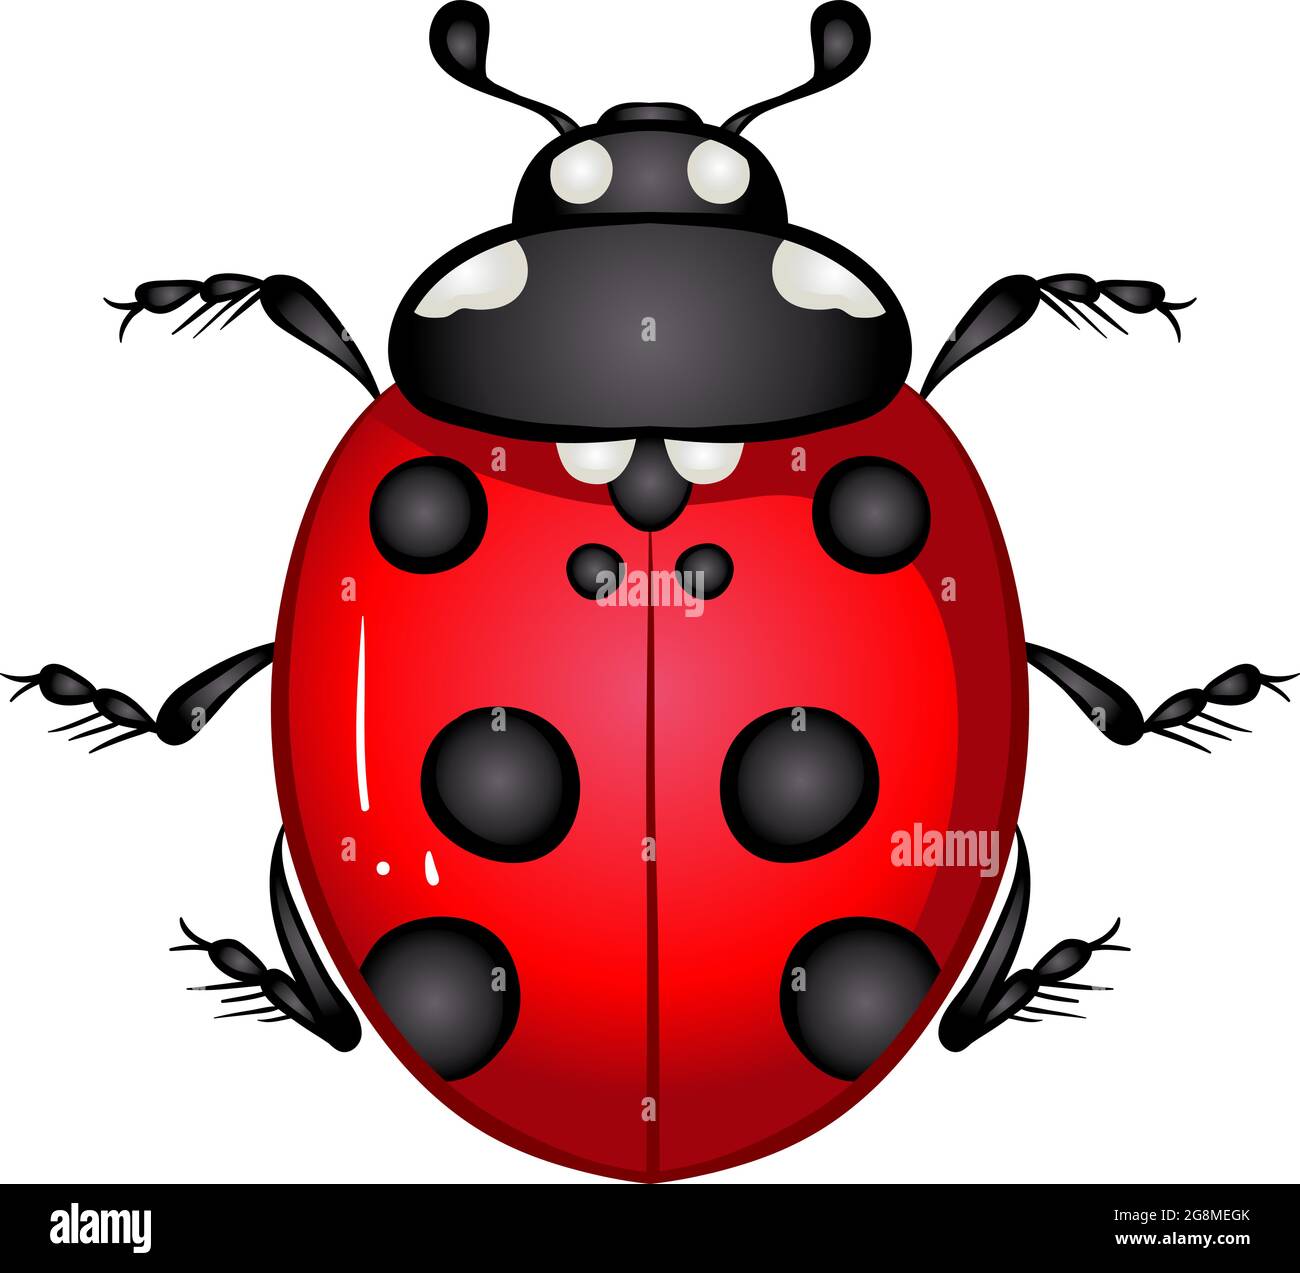 Insect Ladybug Beetle Stock Vector Image And Art Alamy 